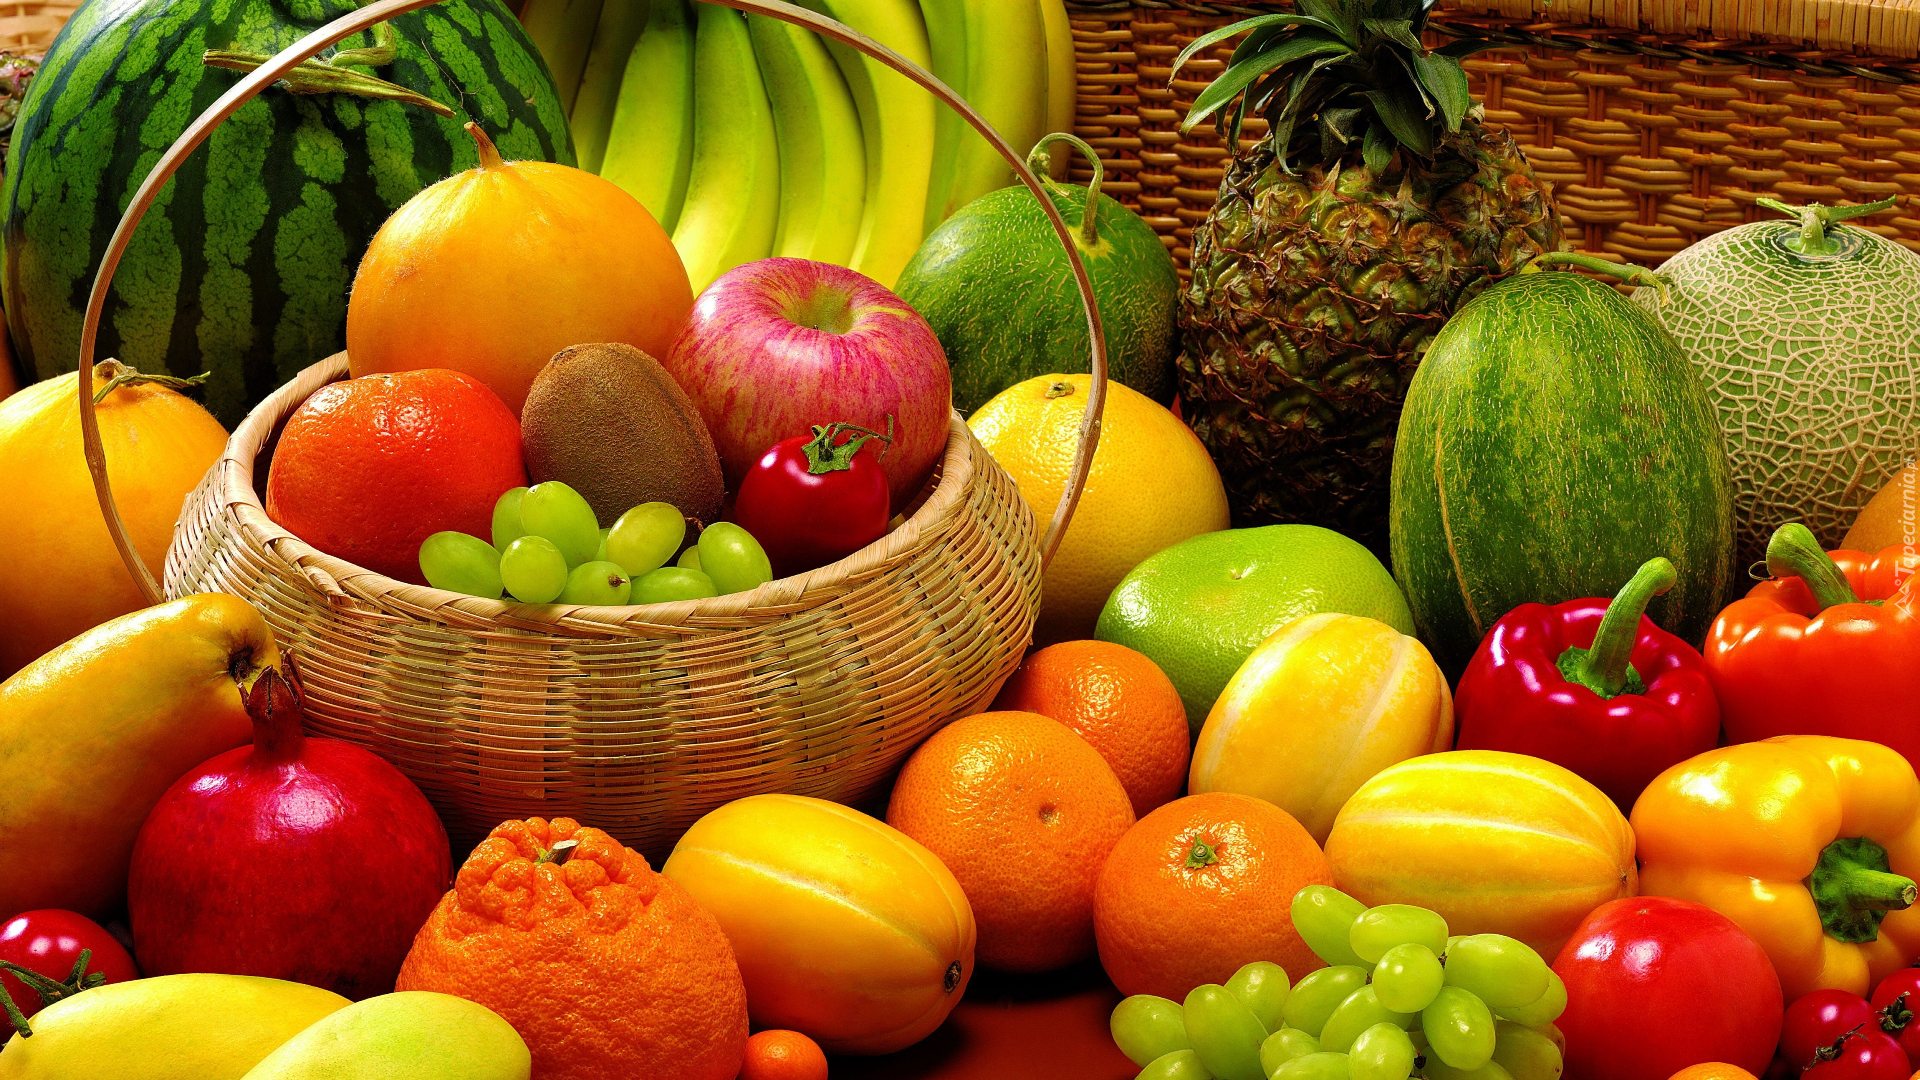 Owoce, Kosz, Winogrona, Melon, Banany, Kiwi, Pomarańcze, Ananas, Jabłka